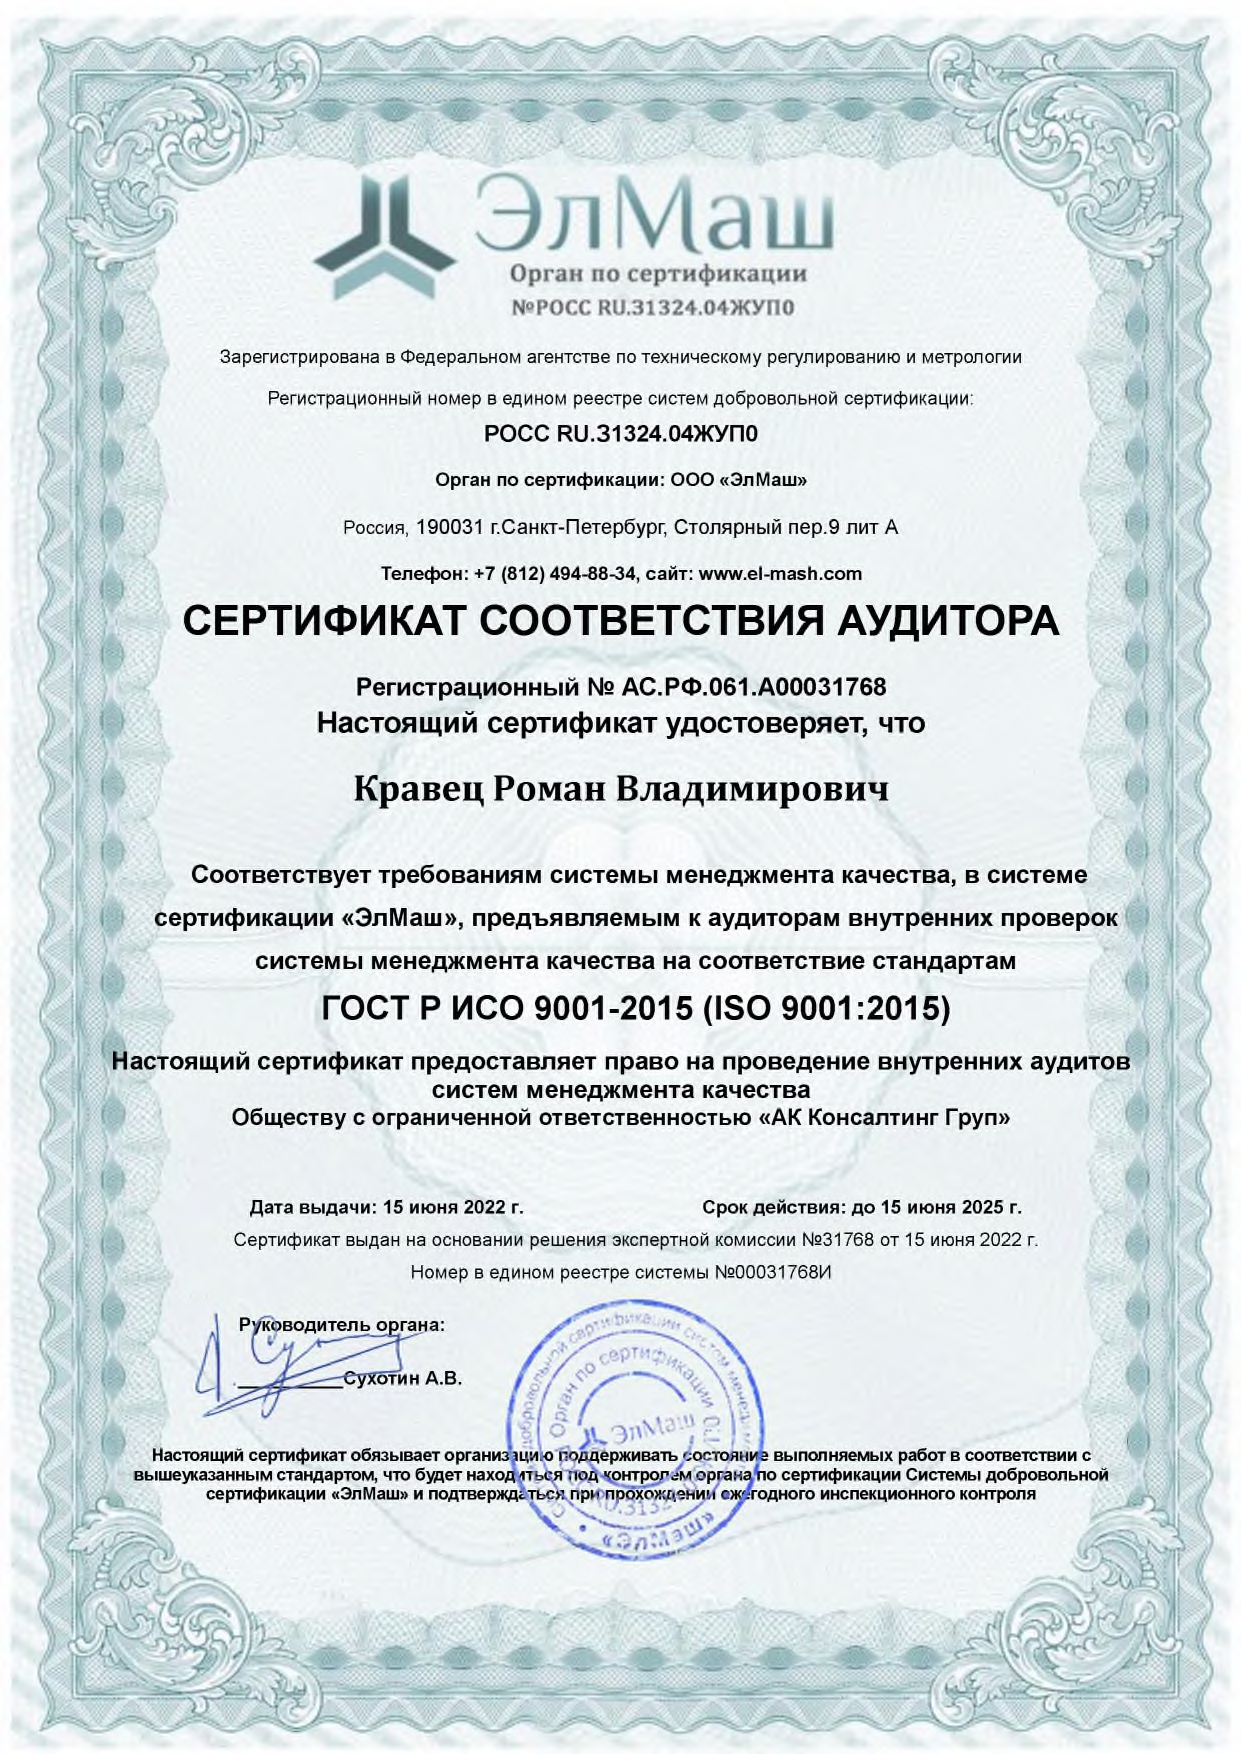 Сертификат соответствия аудитора компании AKCG ГОСТу ИСО 9001-2015